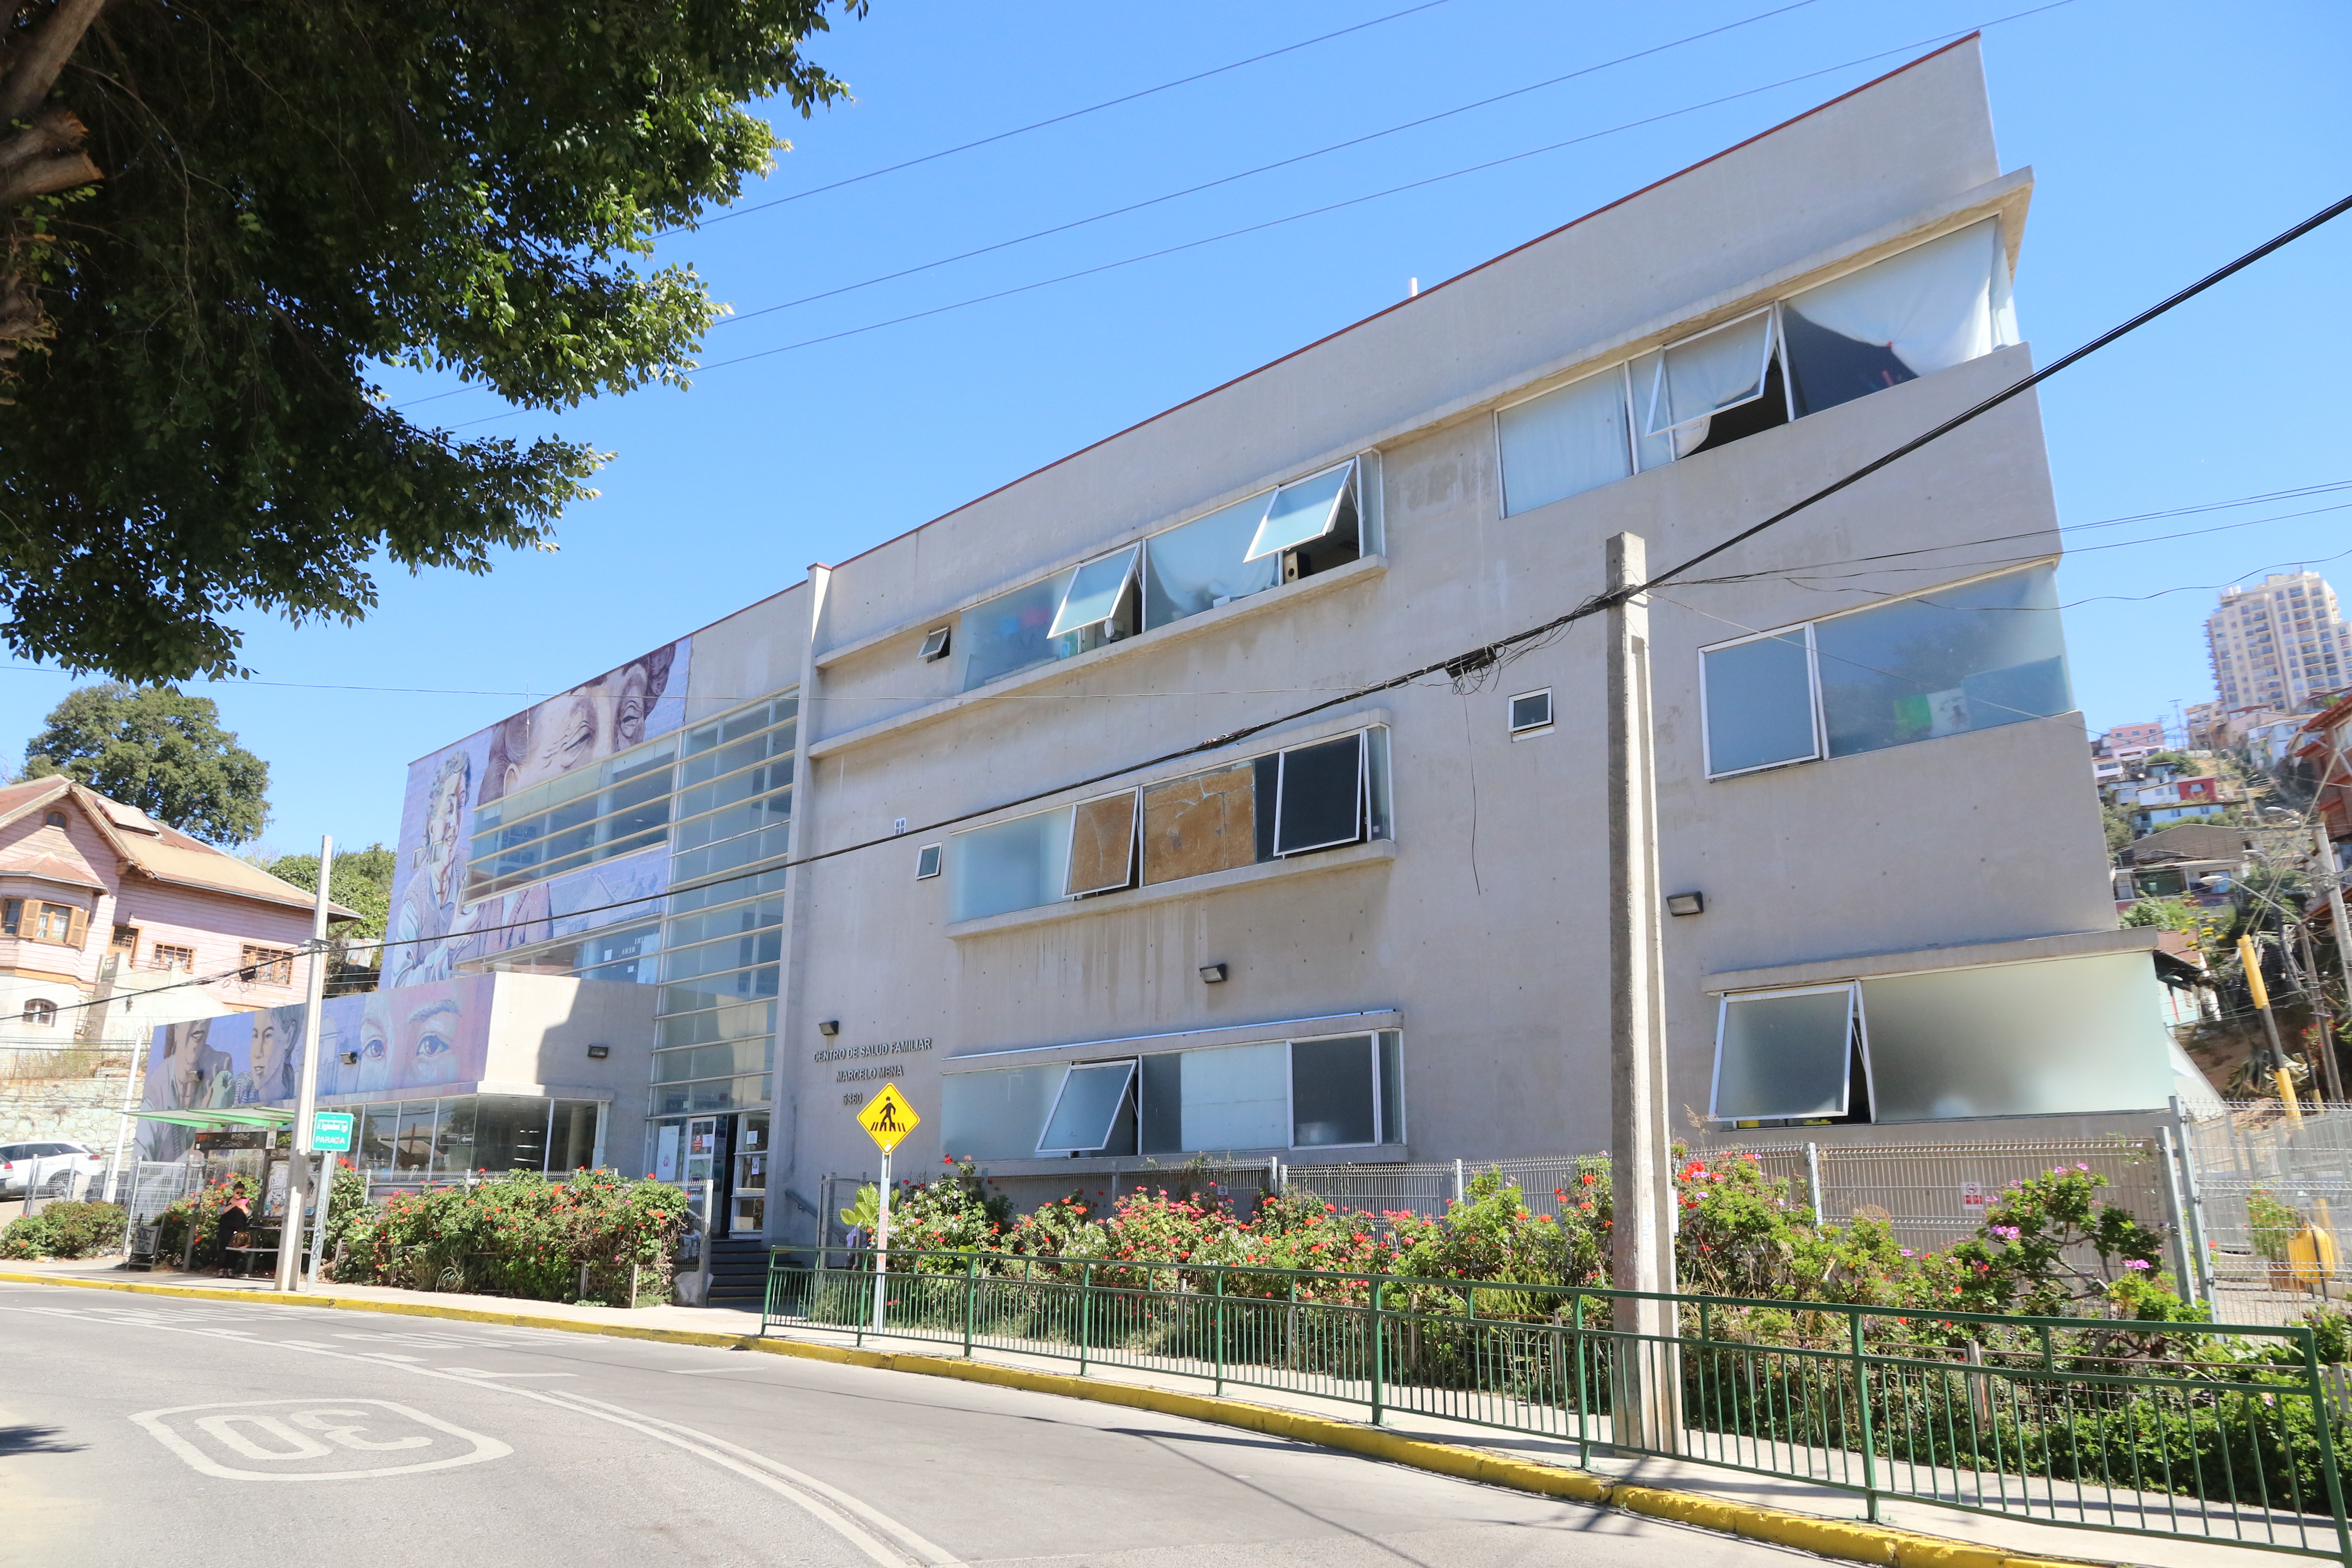 frontis del centro de salud familiar Marcelo Mena de Valparaiso